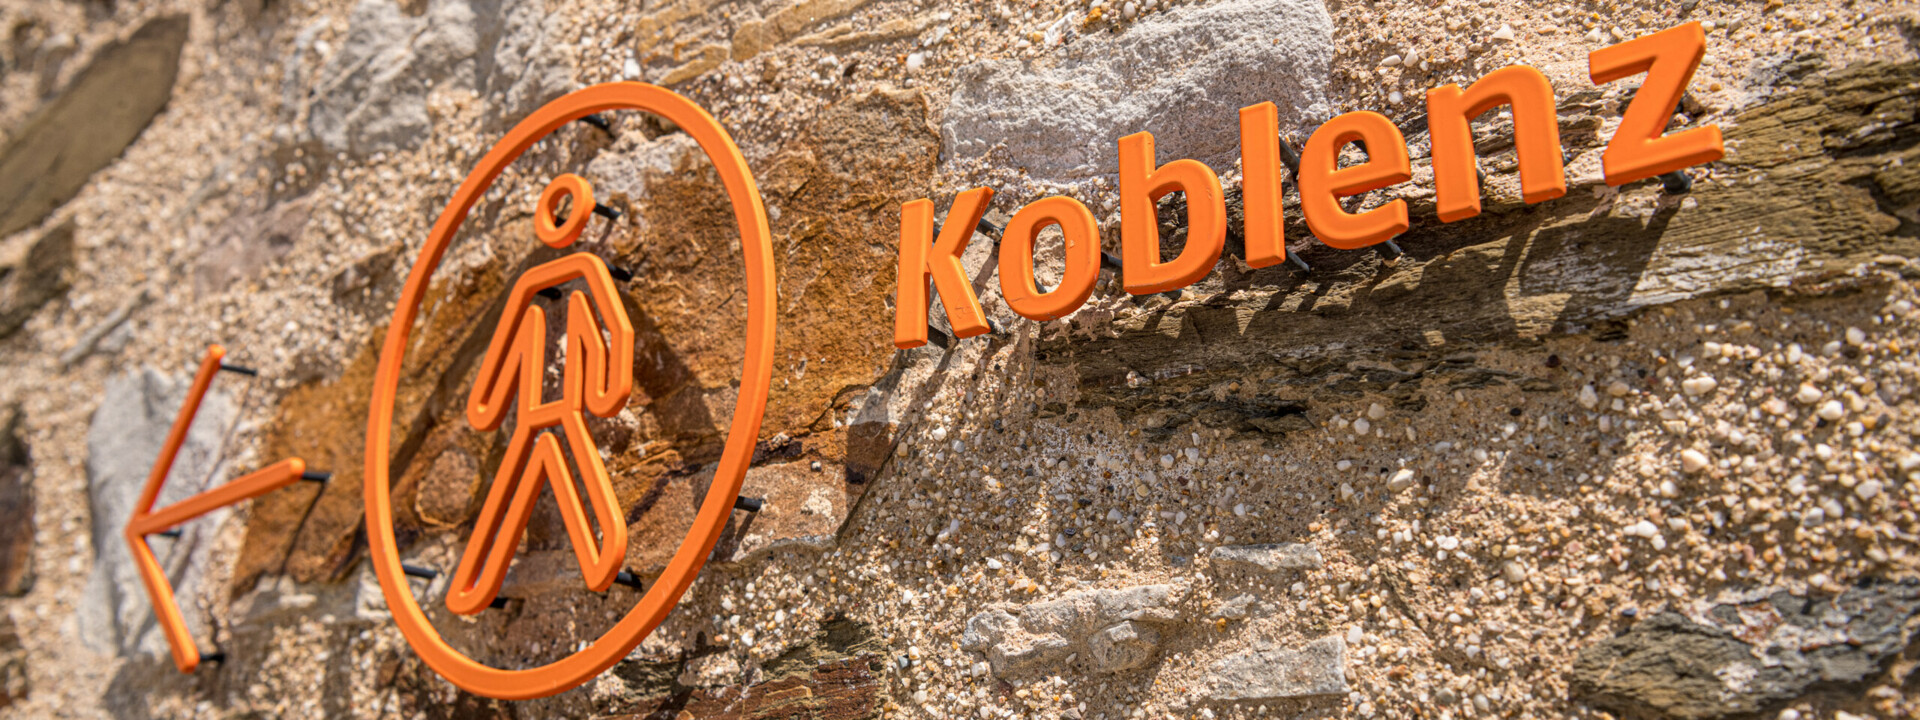 Koblenzschild an Mauer mit Pfeil in Richtung Stadt ©Koblenz-Touristik GmbH, Dominik Ketz